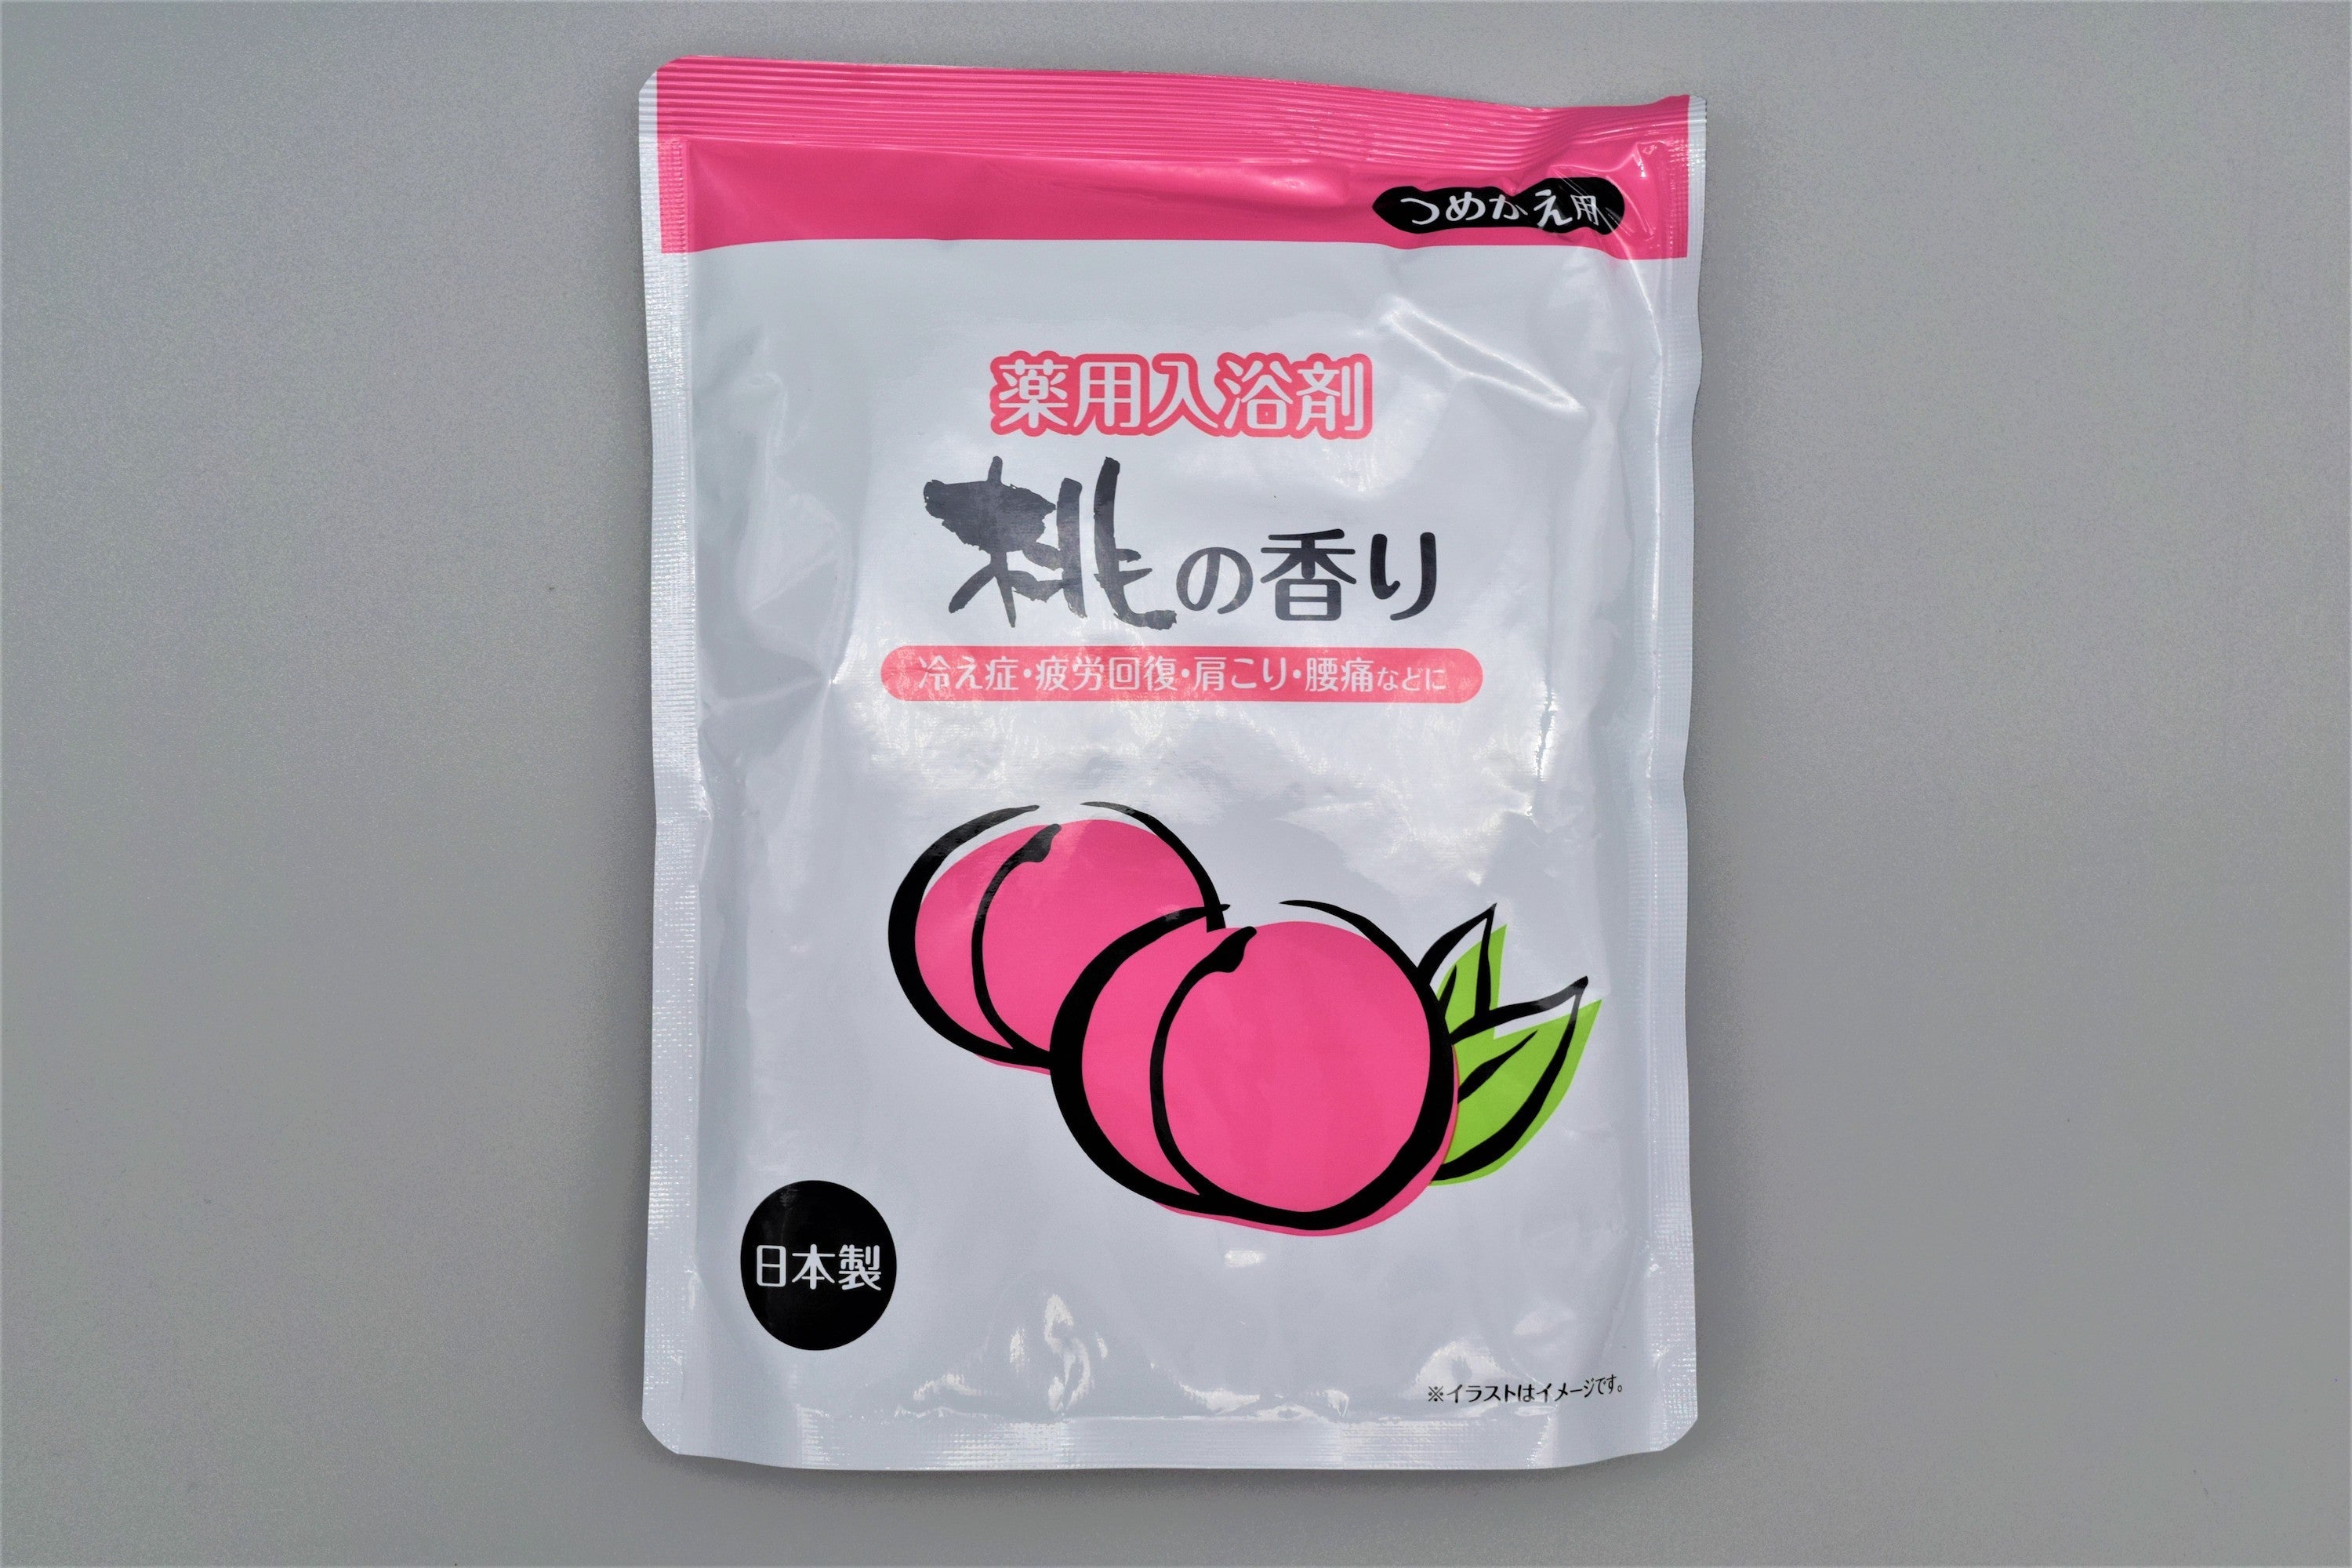 薬用入浴剤桃の香りつめかえ用 540g – トライアルネットスーパー ビジネス